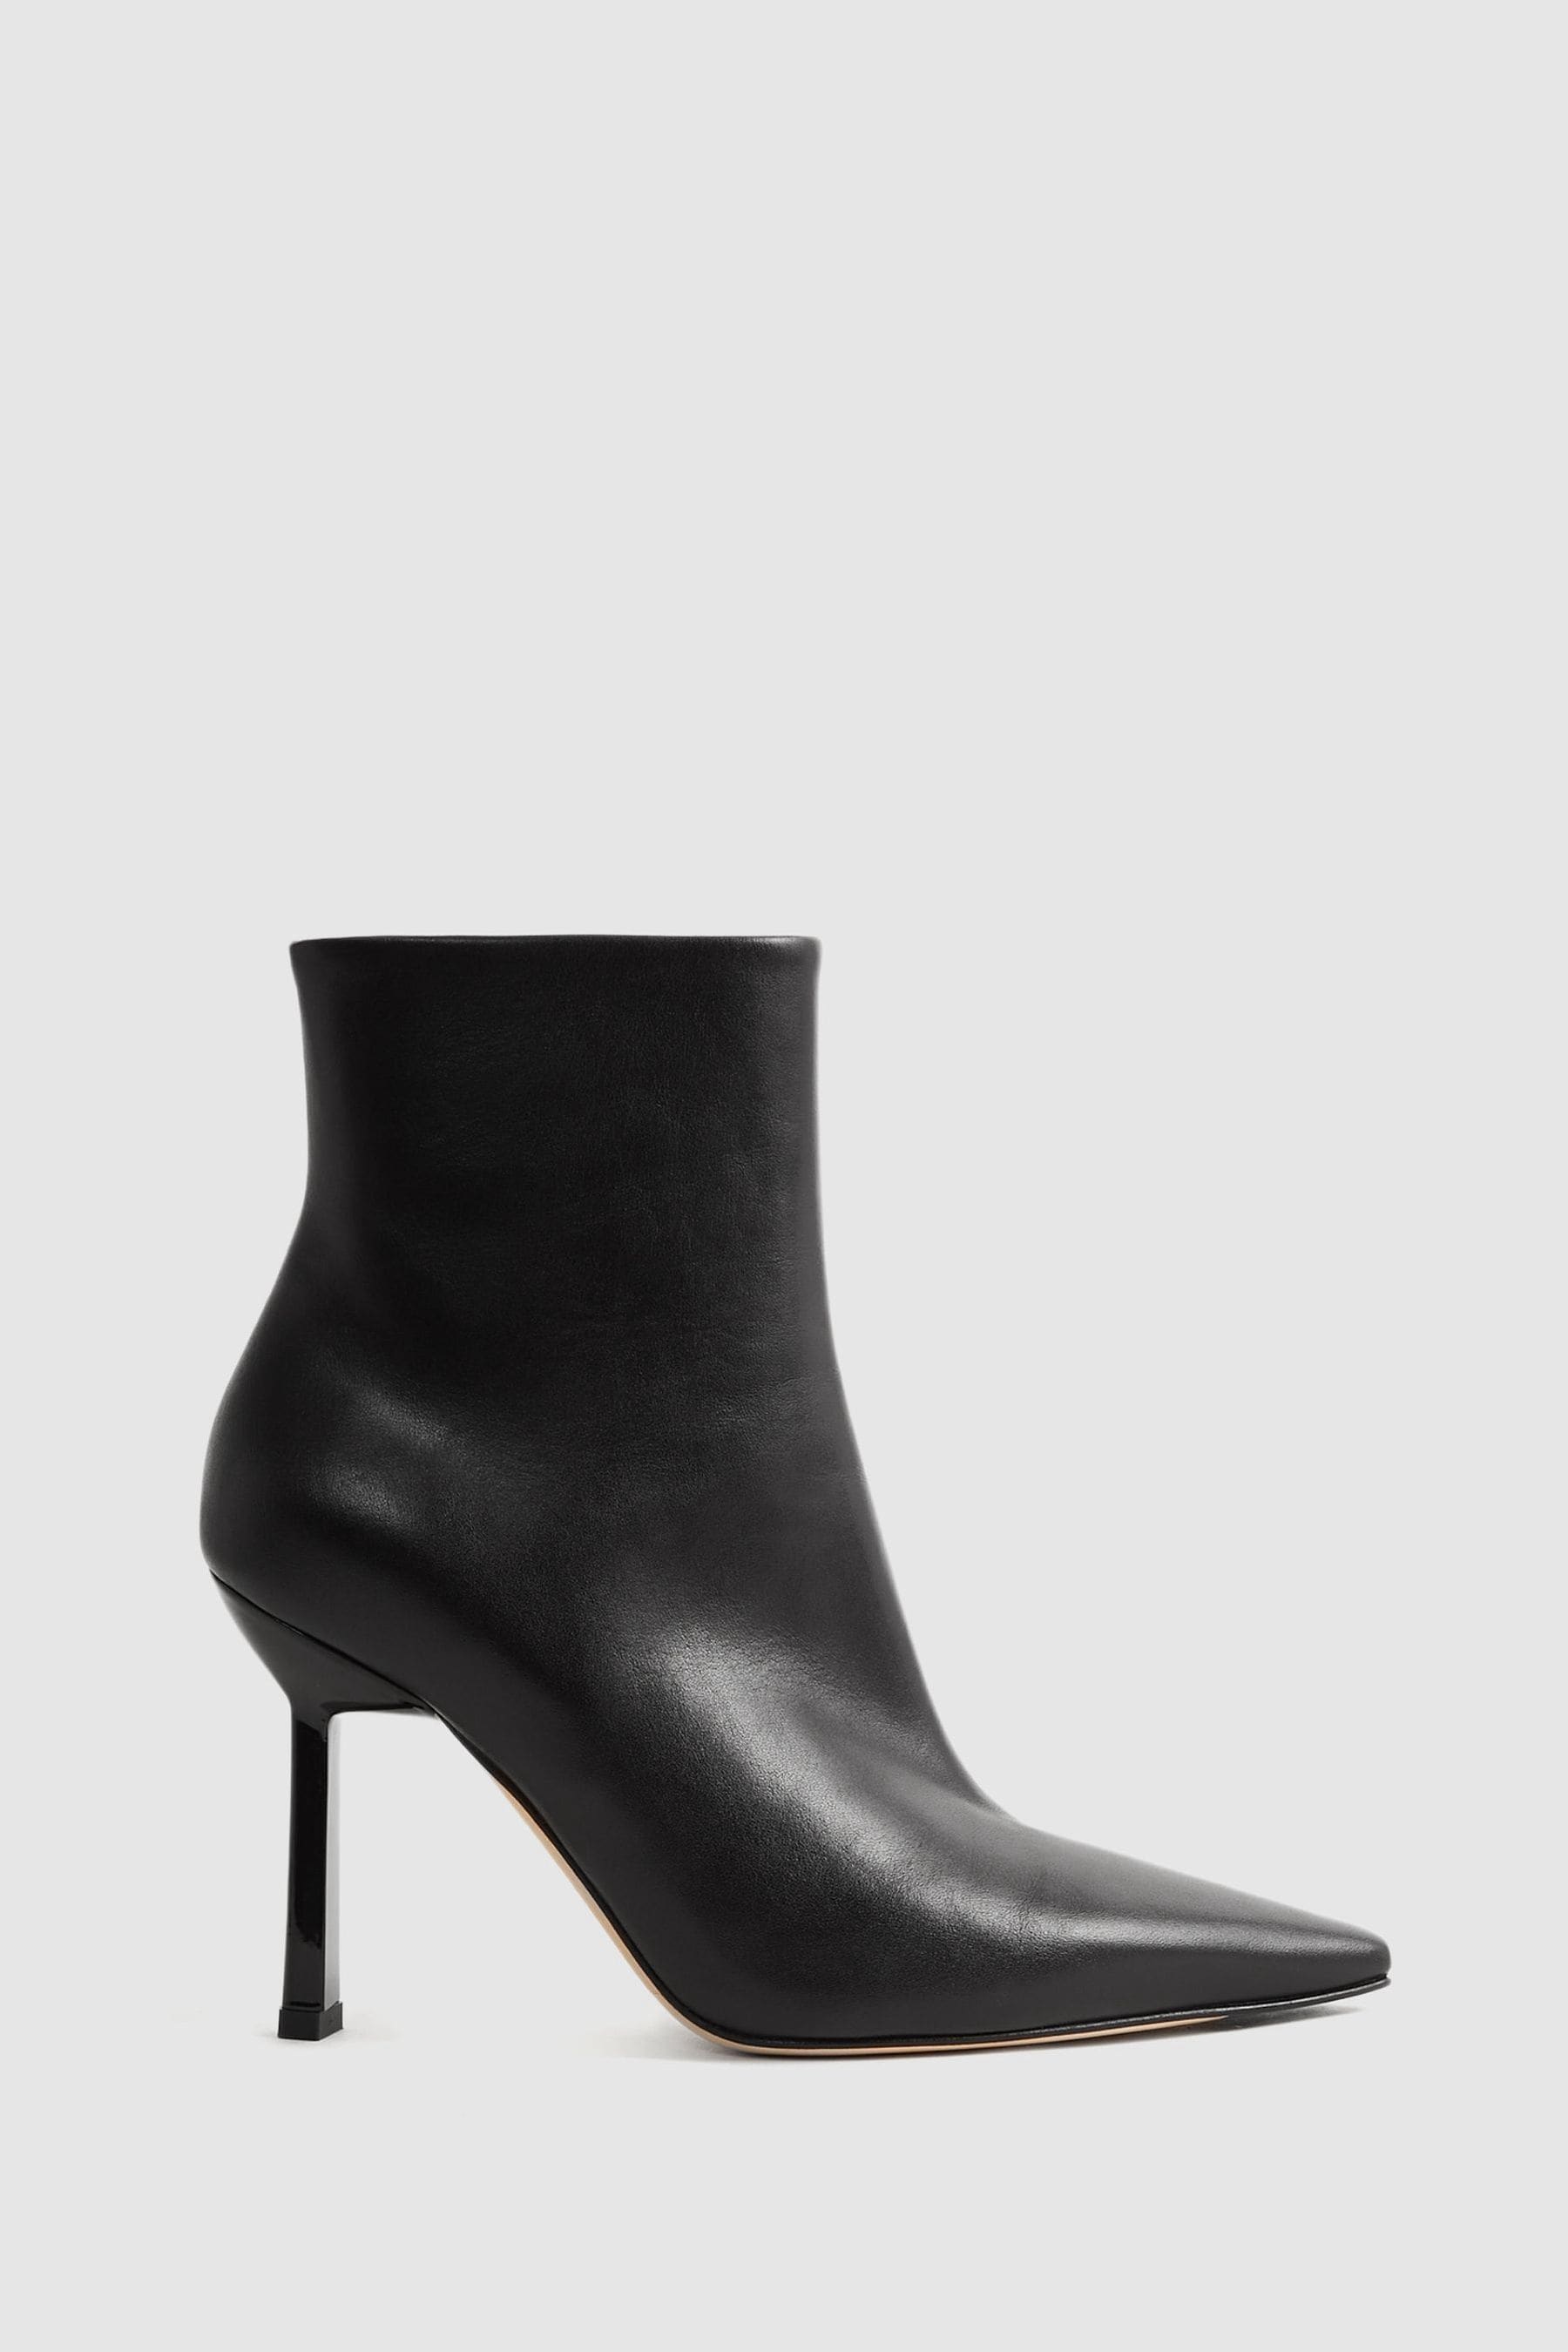 Reiss Scarlett - Black Atelier Italian Leather Heeled Ankle Boots, Uk 7 Eu 40